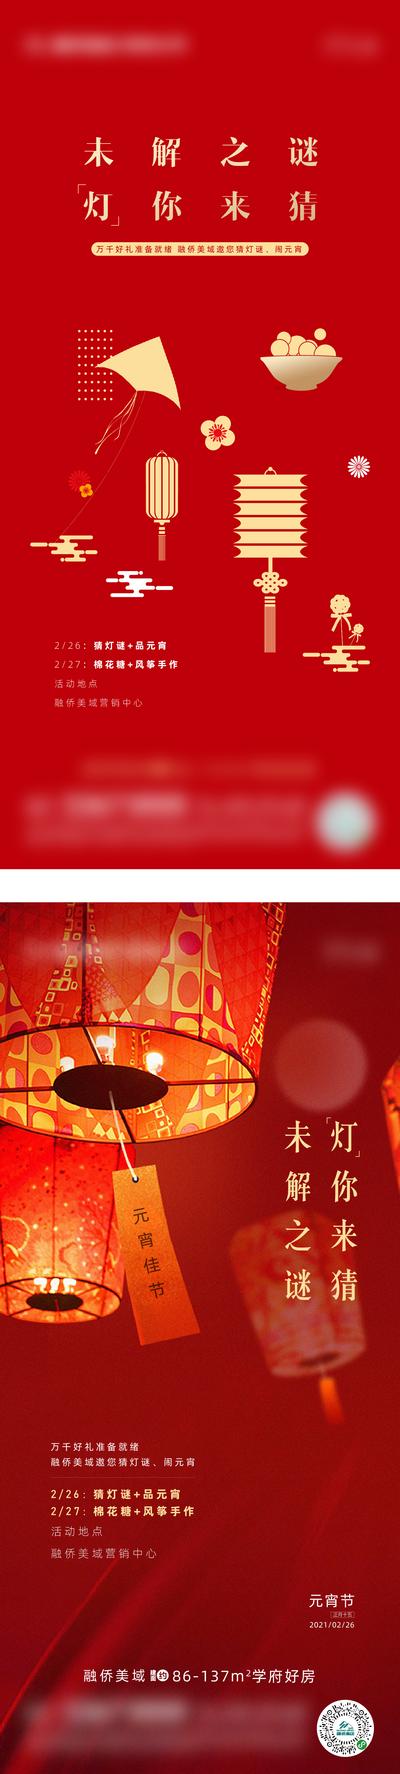 南门网 海报 元宵节 中国传统节日 汤圆 灯笼 灯谜 红金